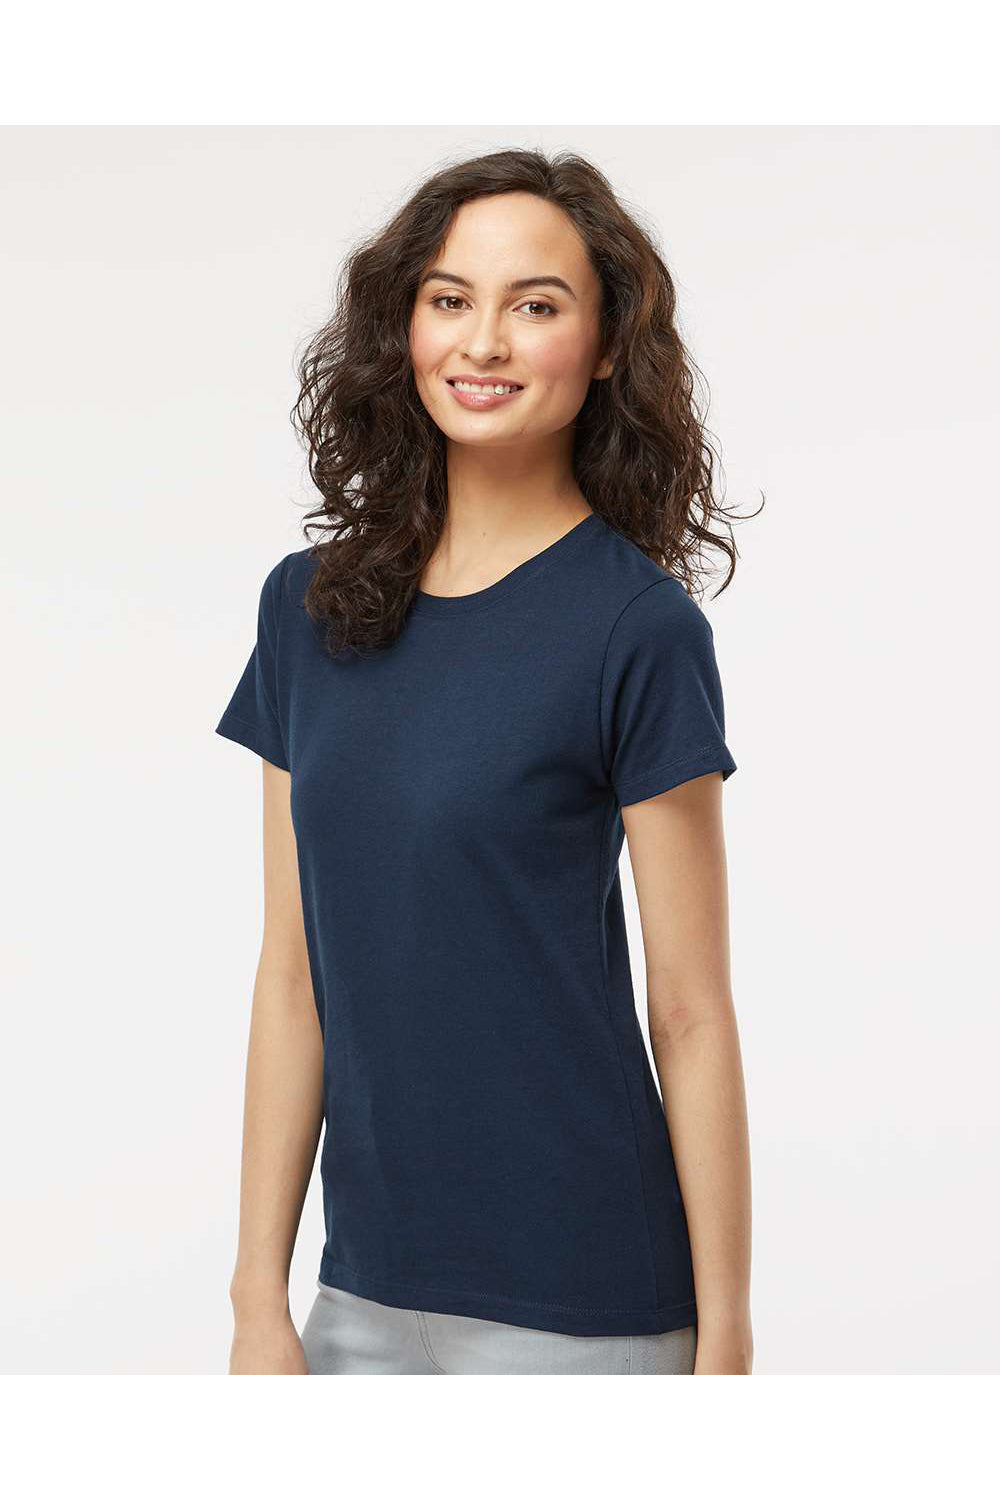 M&O 4810 Womens Gold Soft Touch Short Sleeve Crewneck T-Shirt Deep Navy Blue Model Side